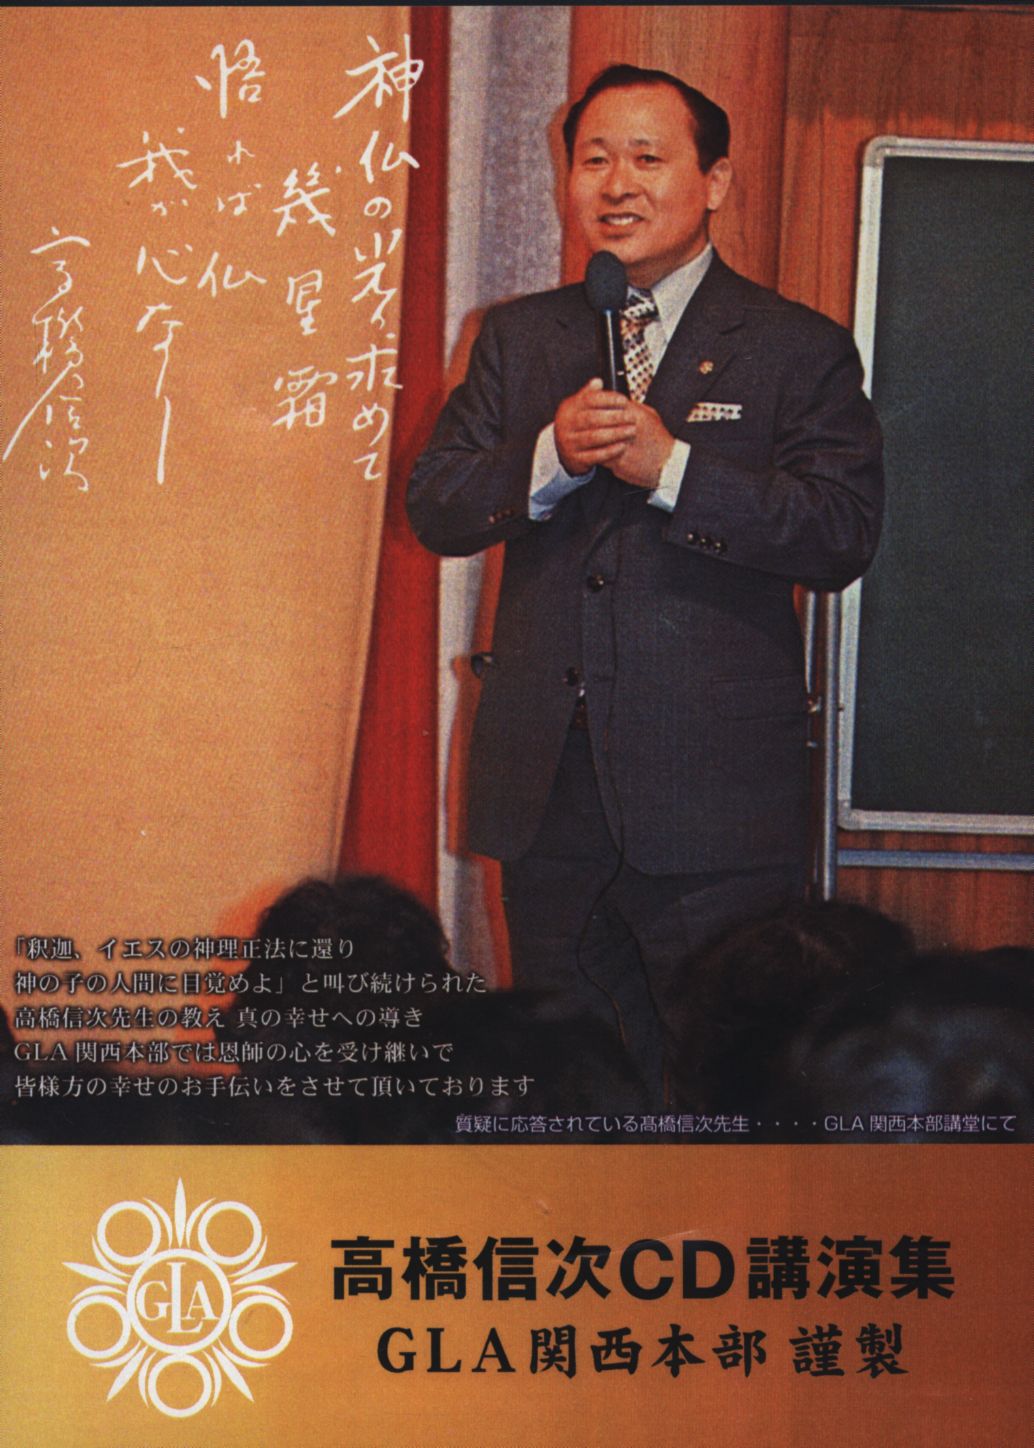 CD Shinji Takahashi Shinji Takahashi lecture Collection '73 Kansai